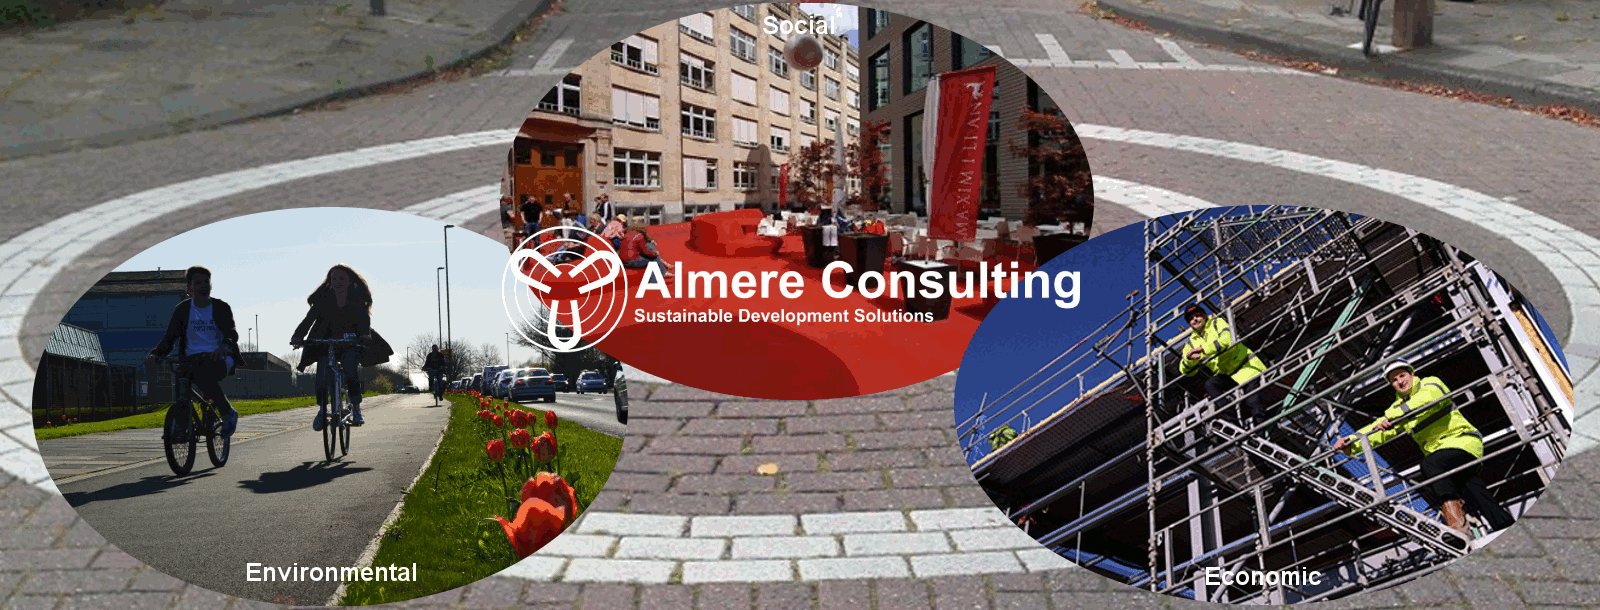 Almere Consulting